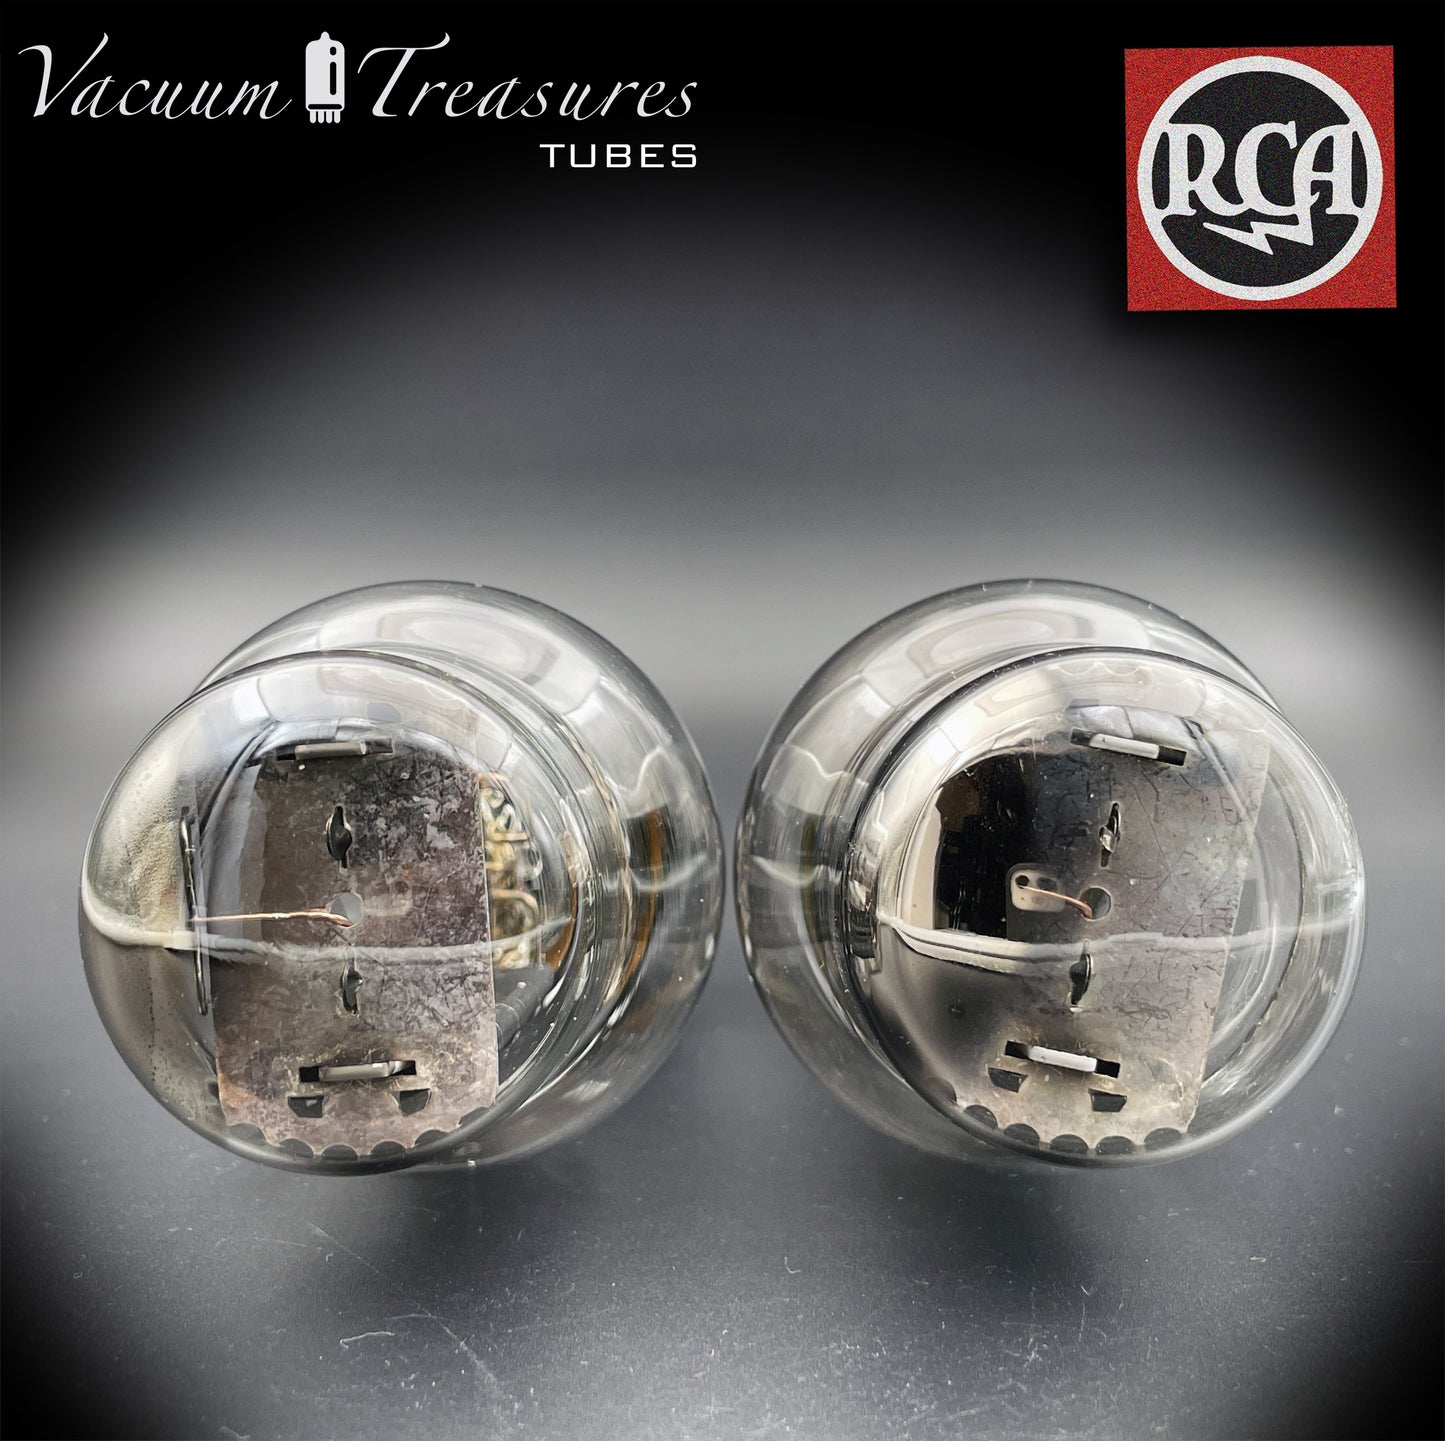 5Z3 (VT-145) RCA Black Plates Oberseite [] Getter Matched Pair Tubes Gleichrichter, hergestellt in den USA